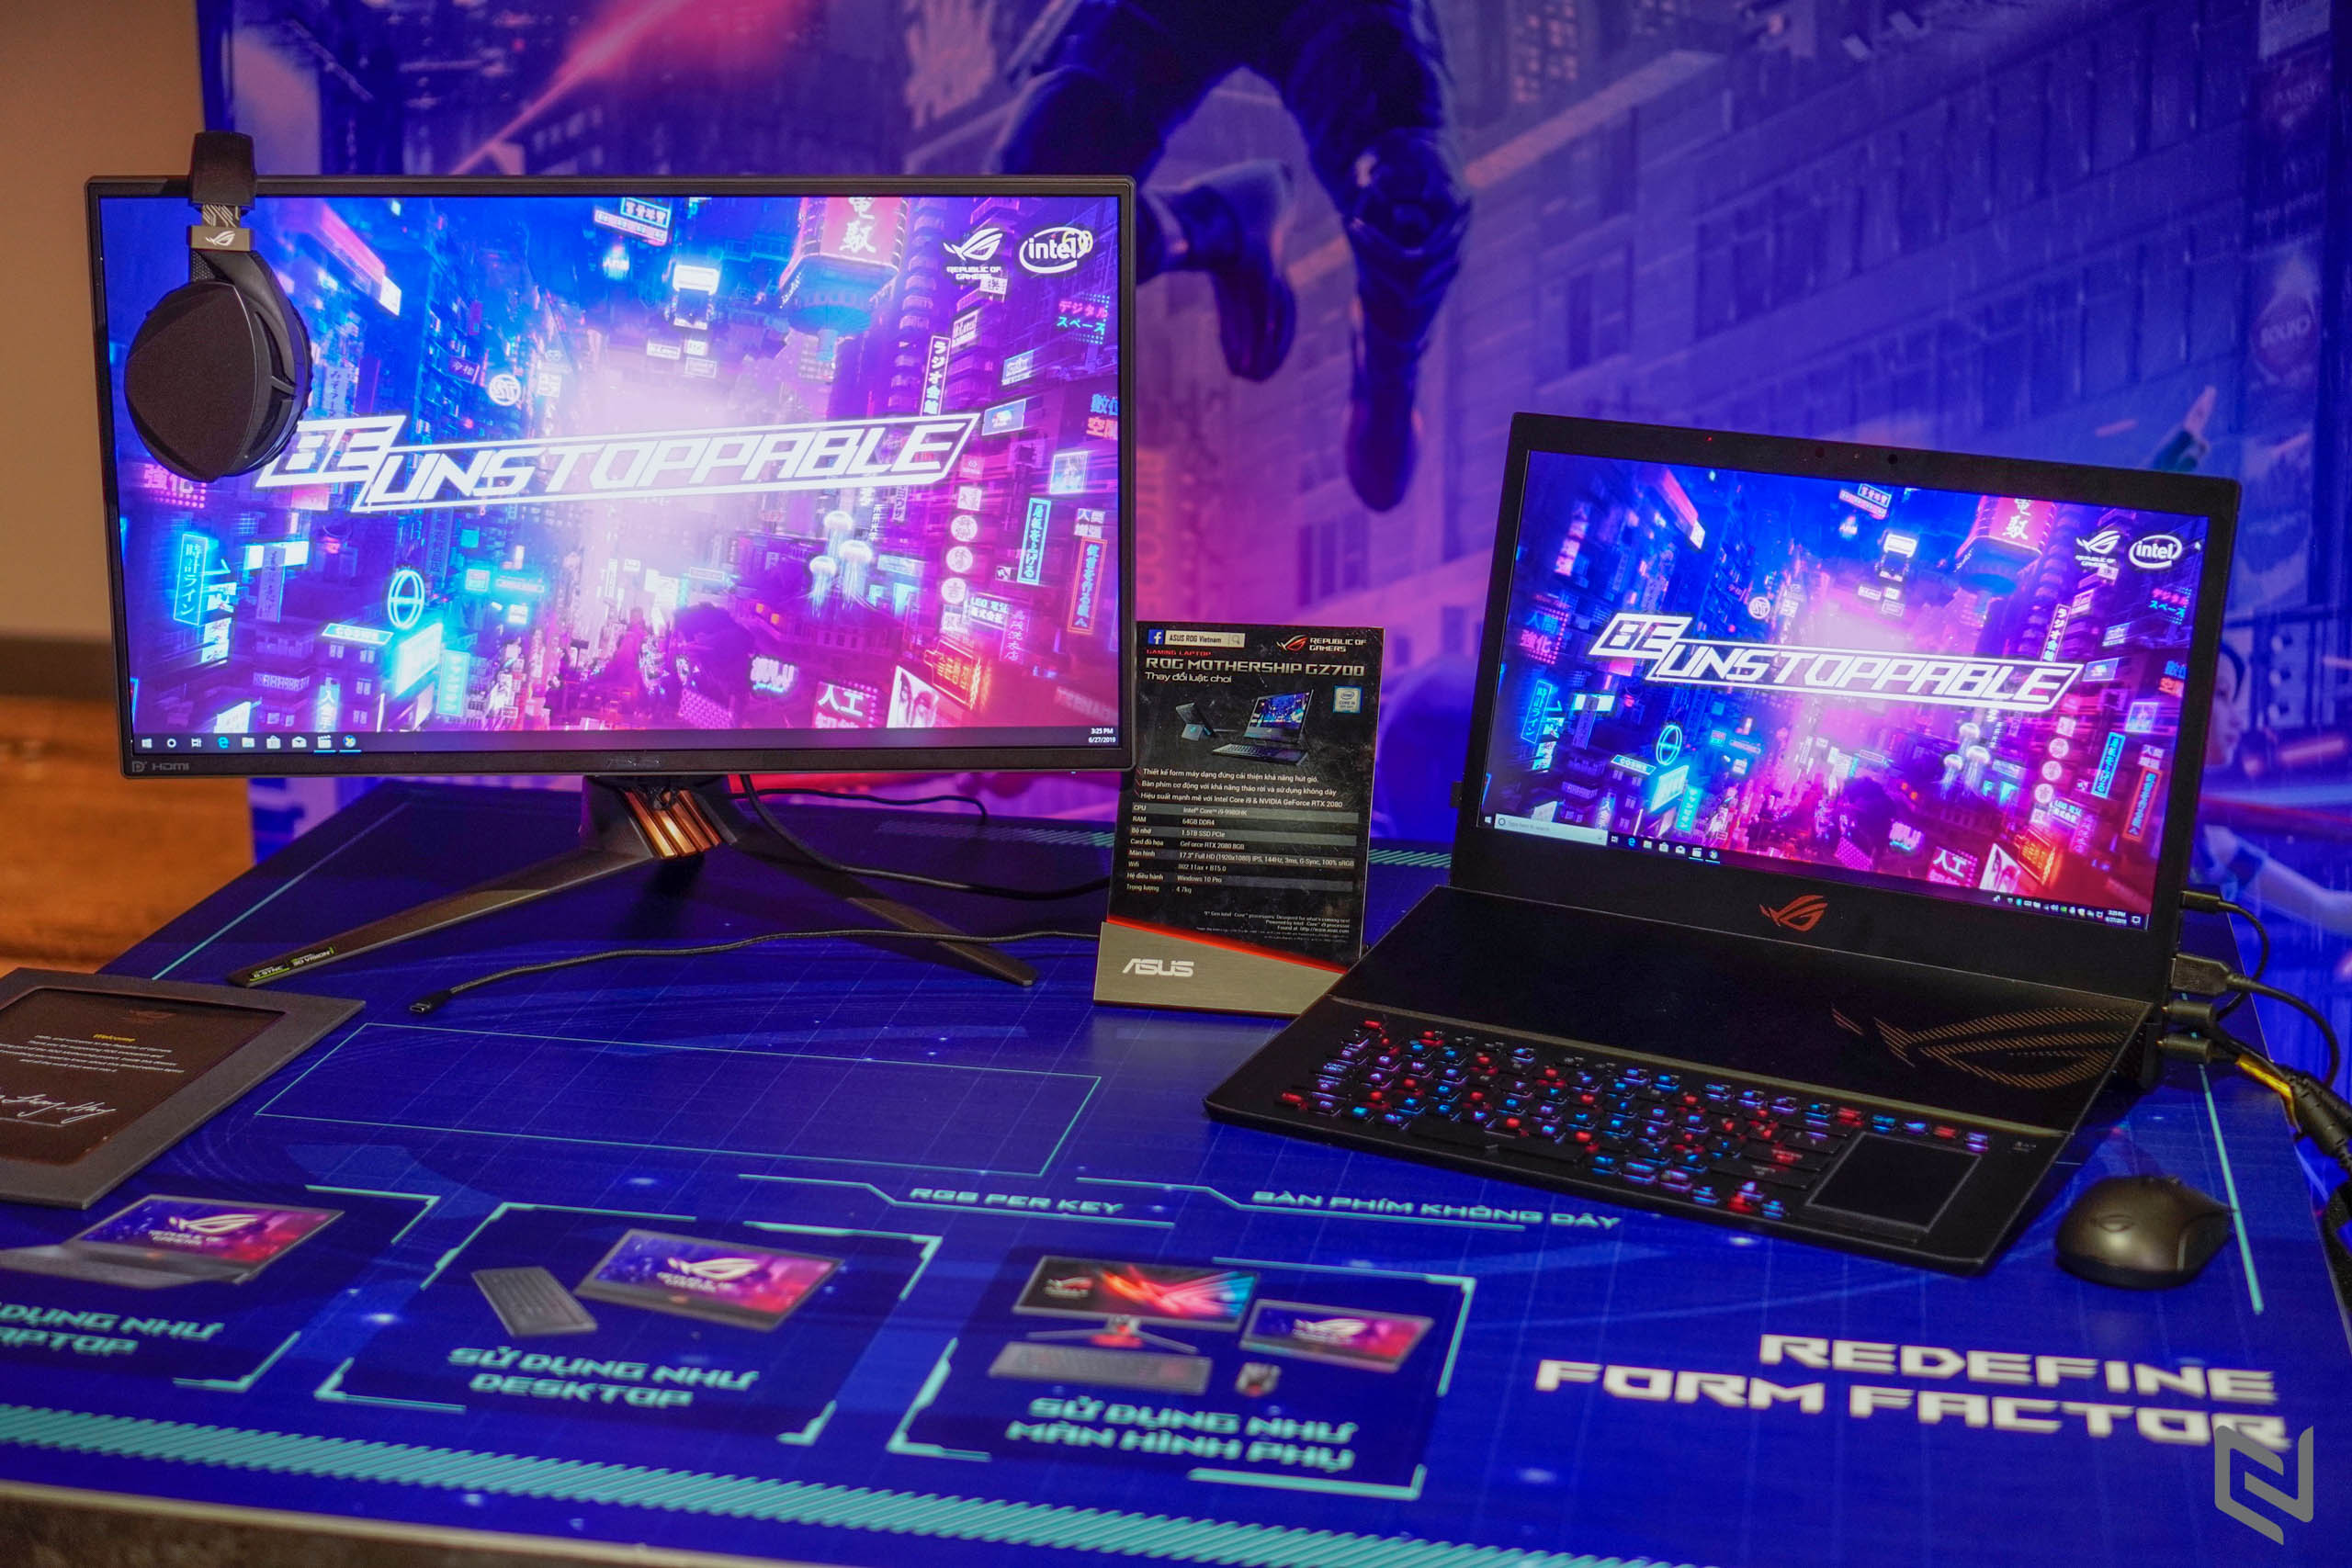 ASUS ROG công bố dải laptop gaming trang bị CPU Intel Core thế hệ 9 tại sự kiện BE UNSTOPPABLE